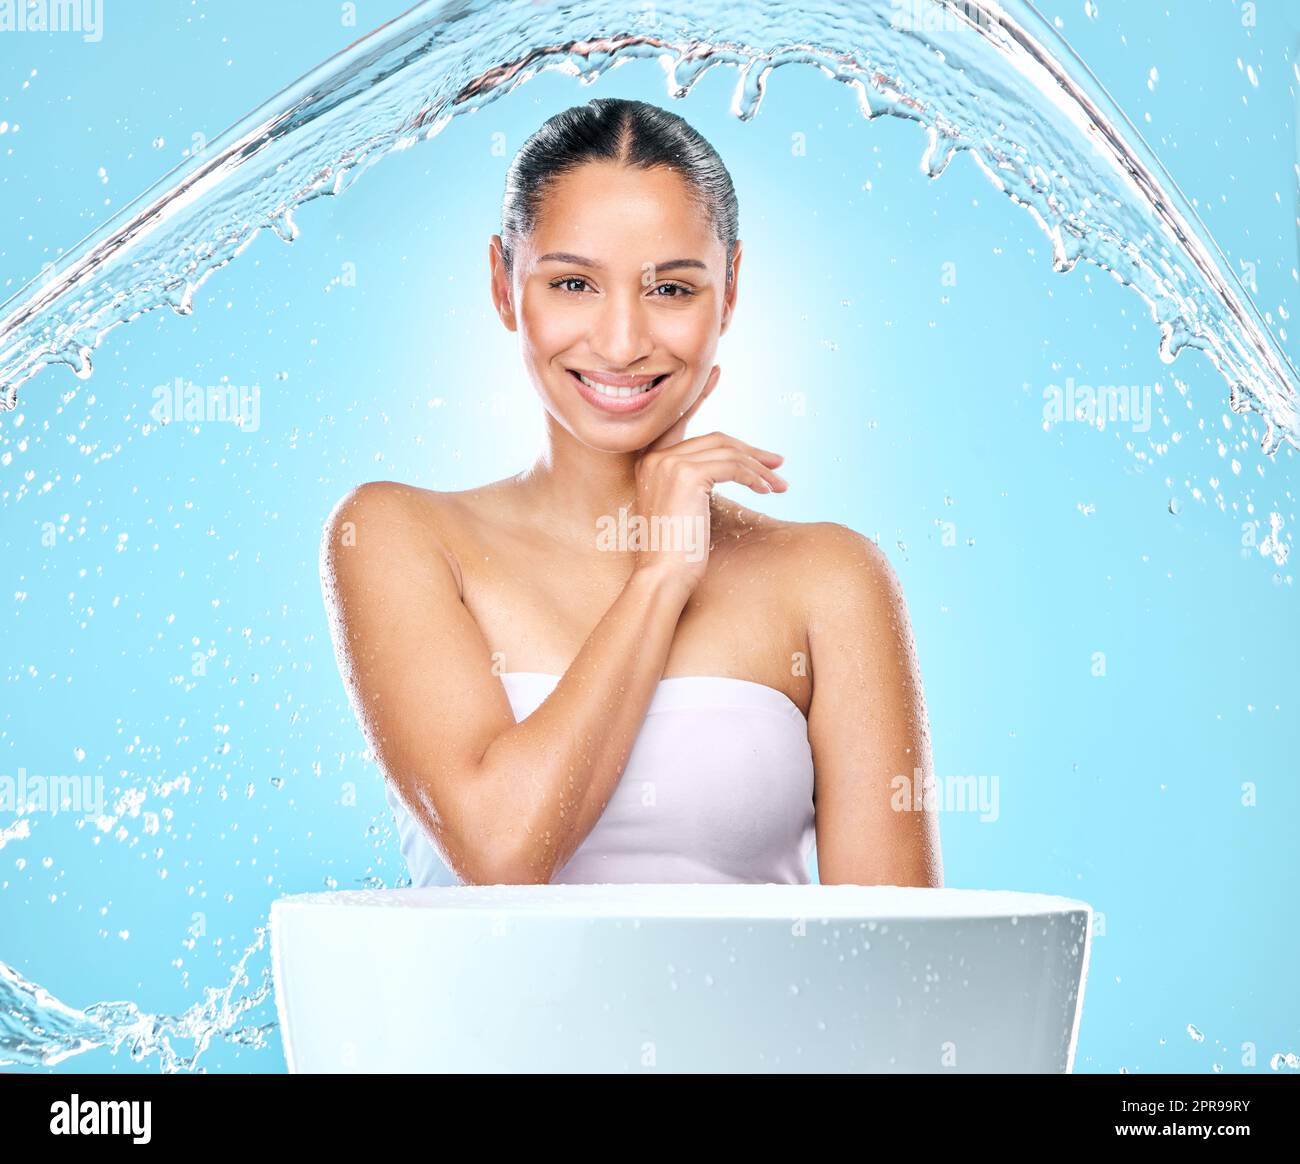 Nettoyez votre acte. Photo de studio d'éclaboussures d'eau propre contre une femme. Banque D'Images